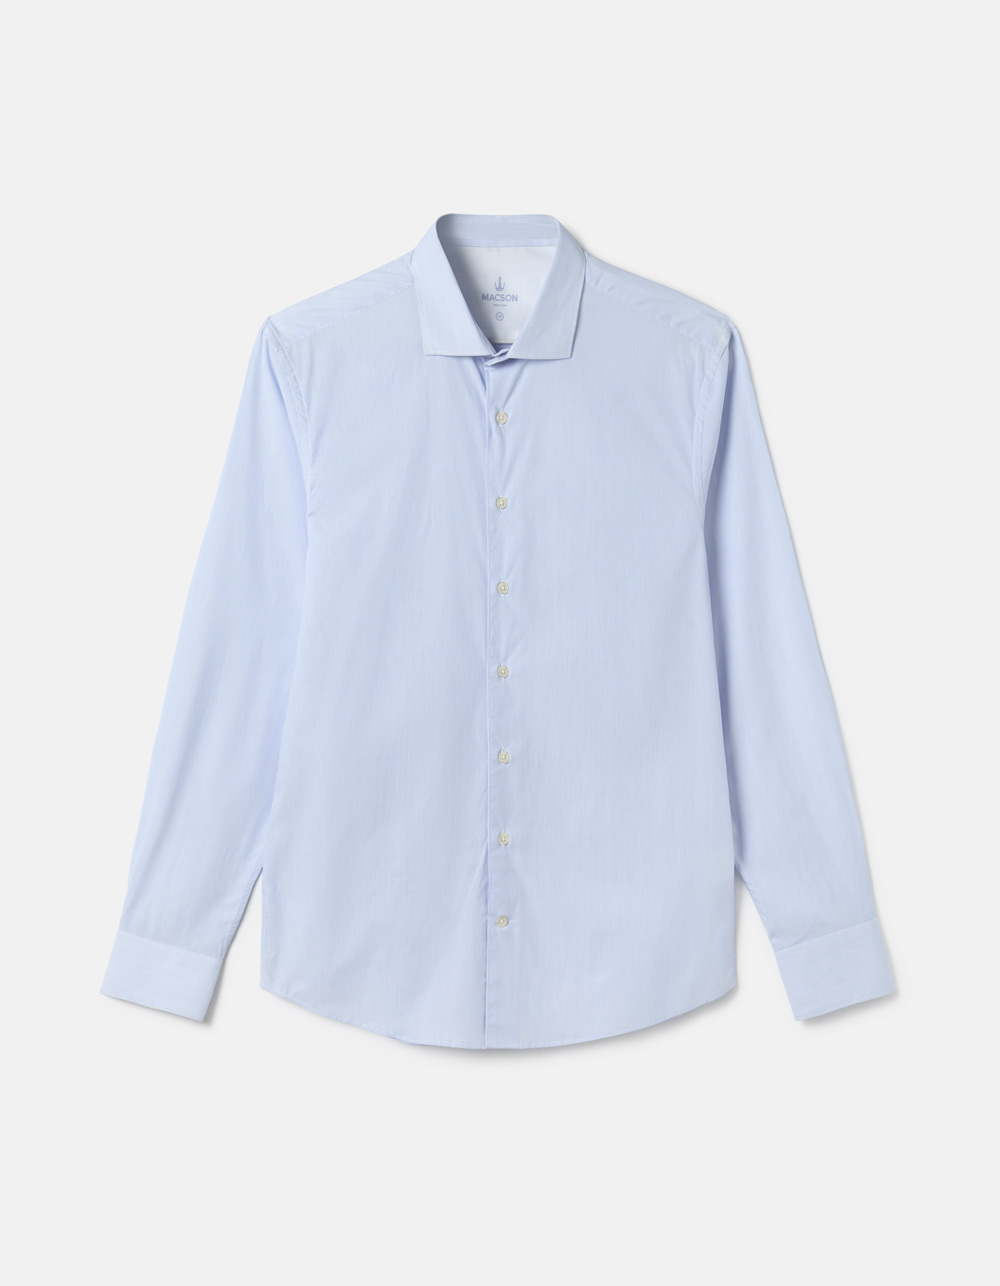 Camisa branca com riscas azuis